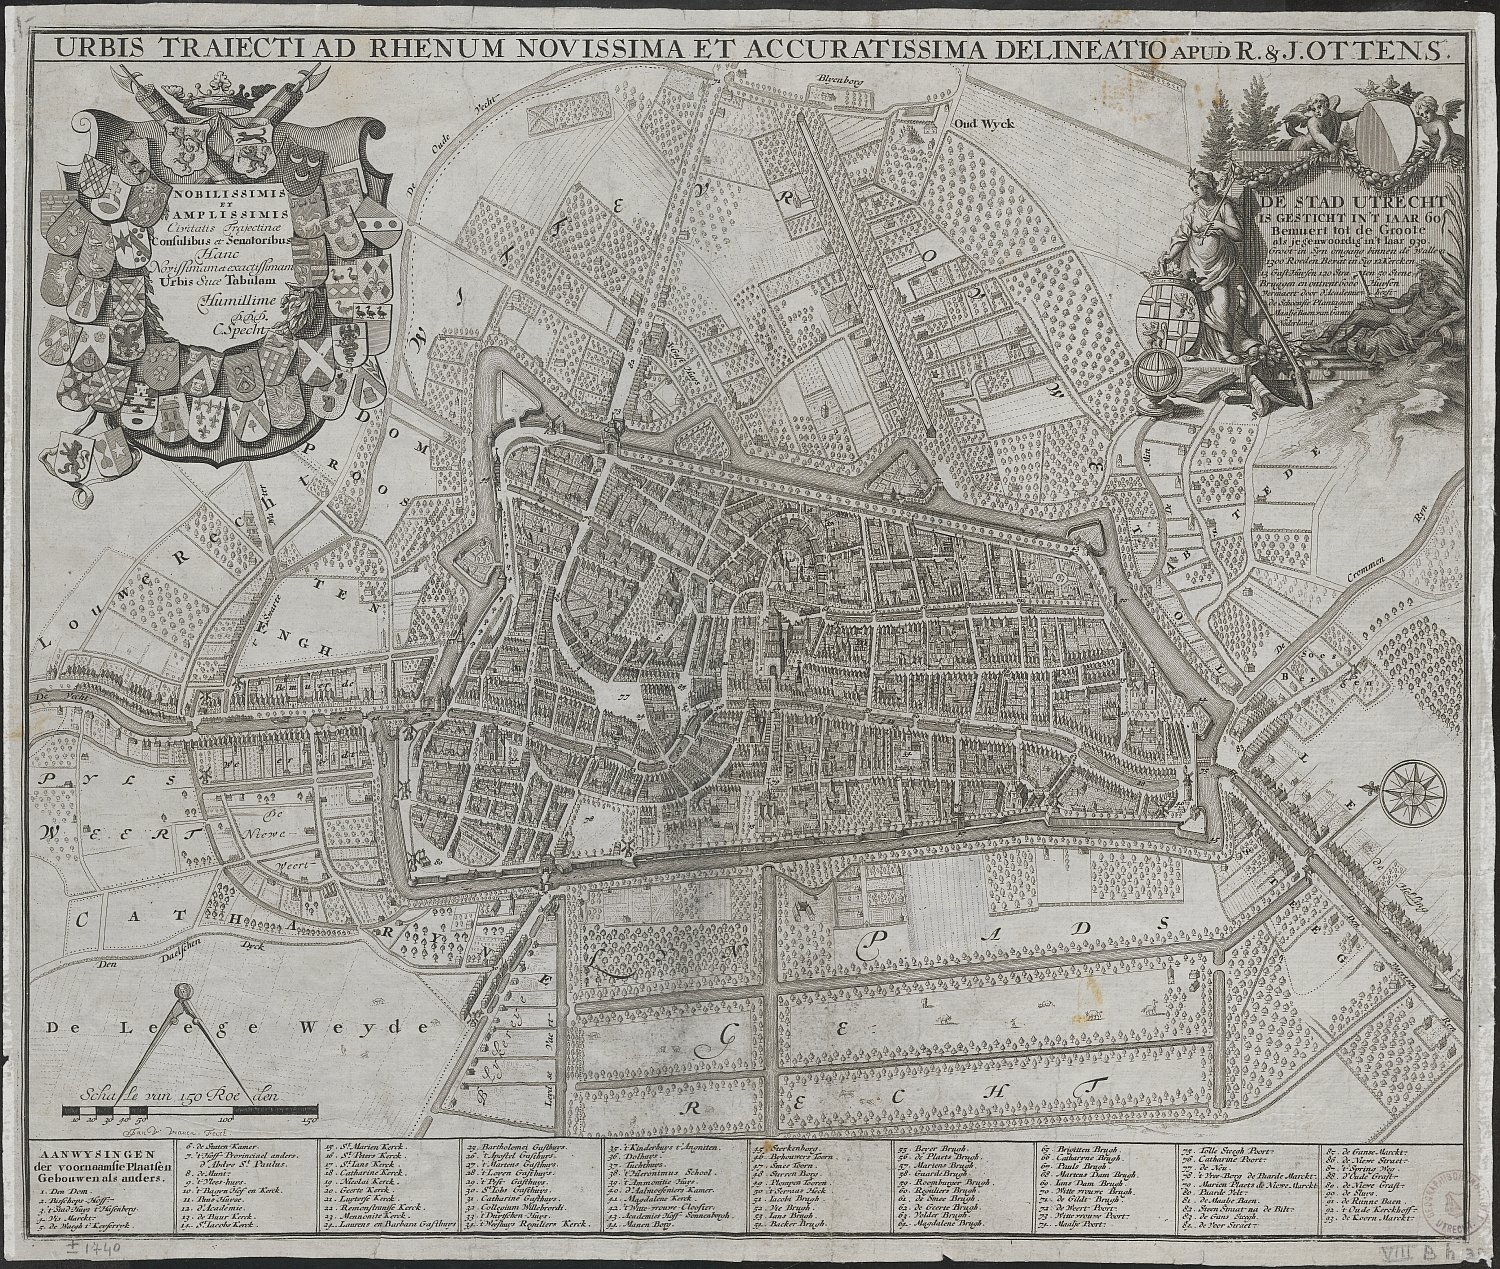 Plattegrond van Utrecht door Specht, ca. 1740